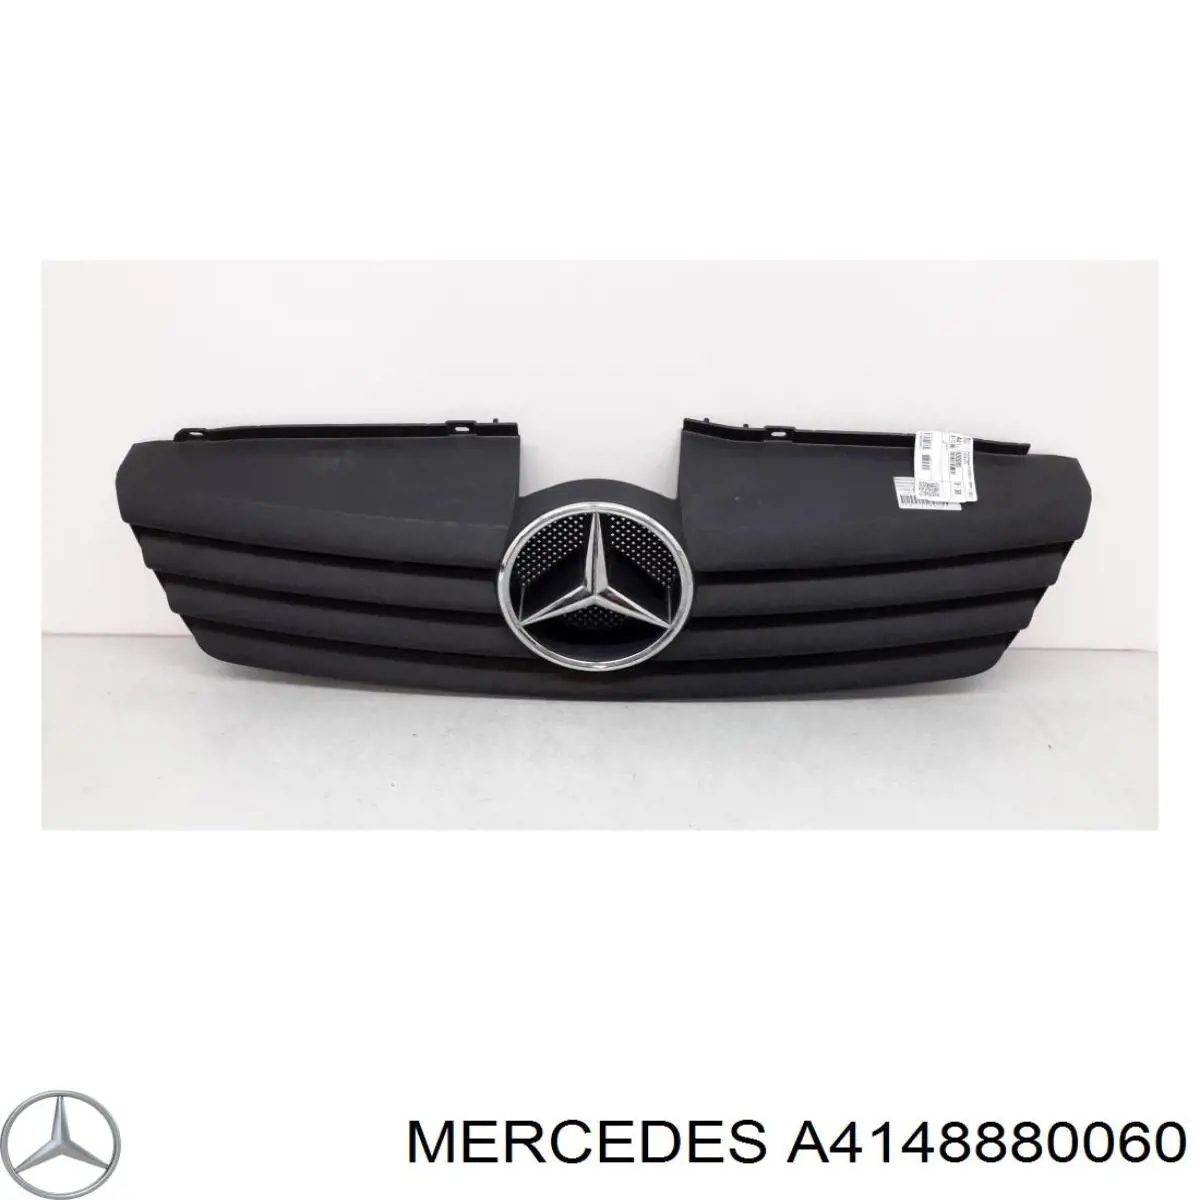 4148880060 Mercedes grelha do radiador